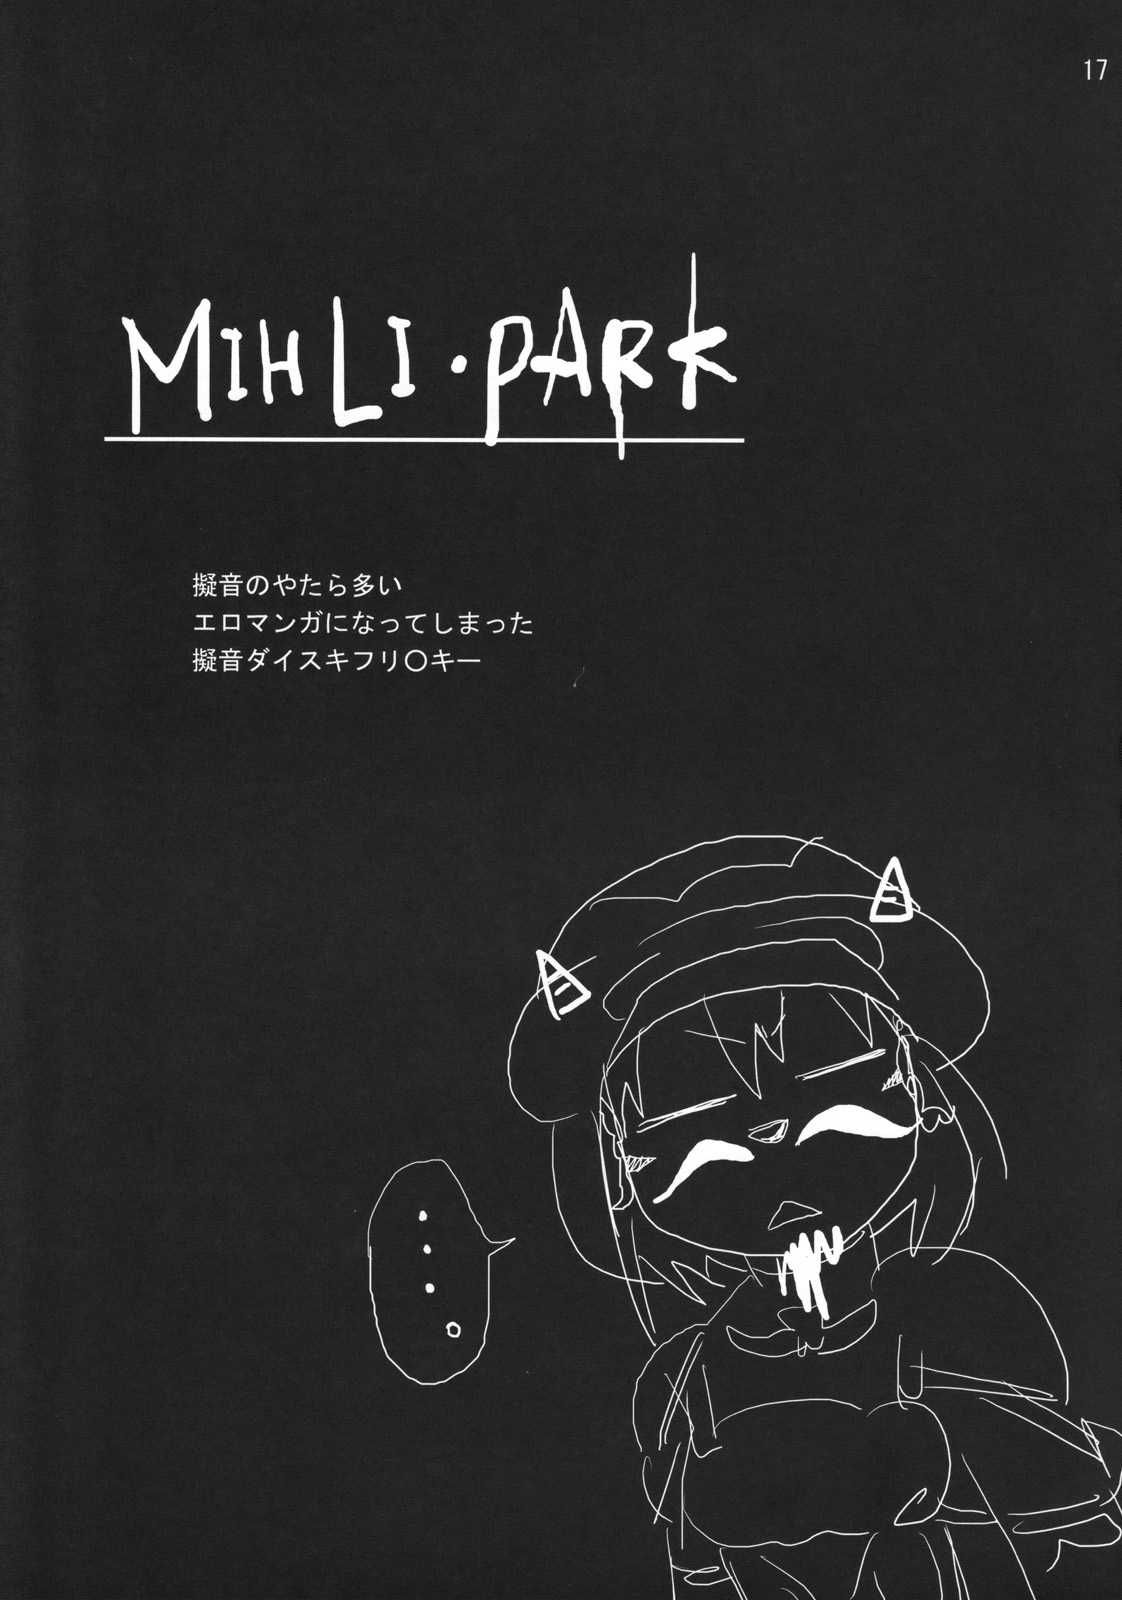 [Pink Venus] Mihli Park 1 (Final Fantasy XI) 